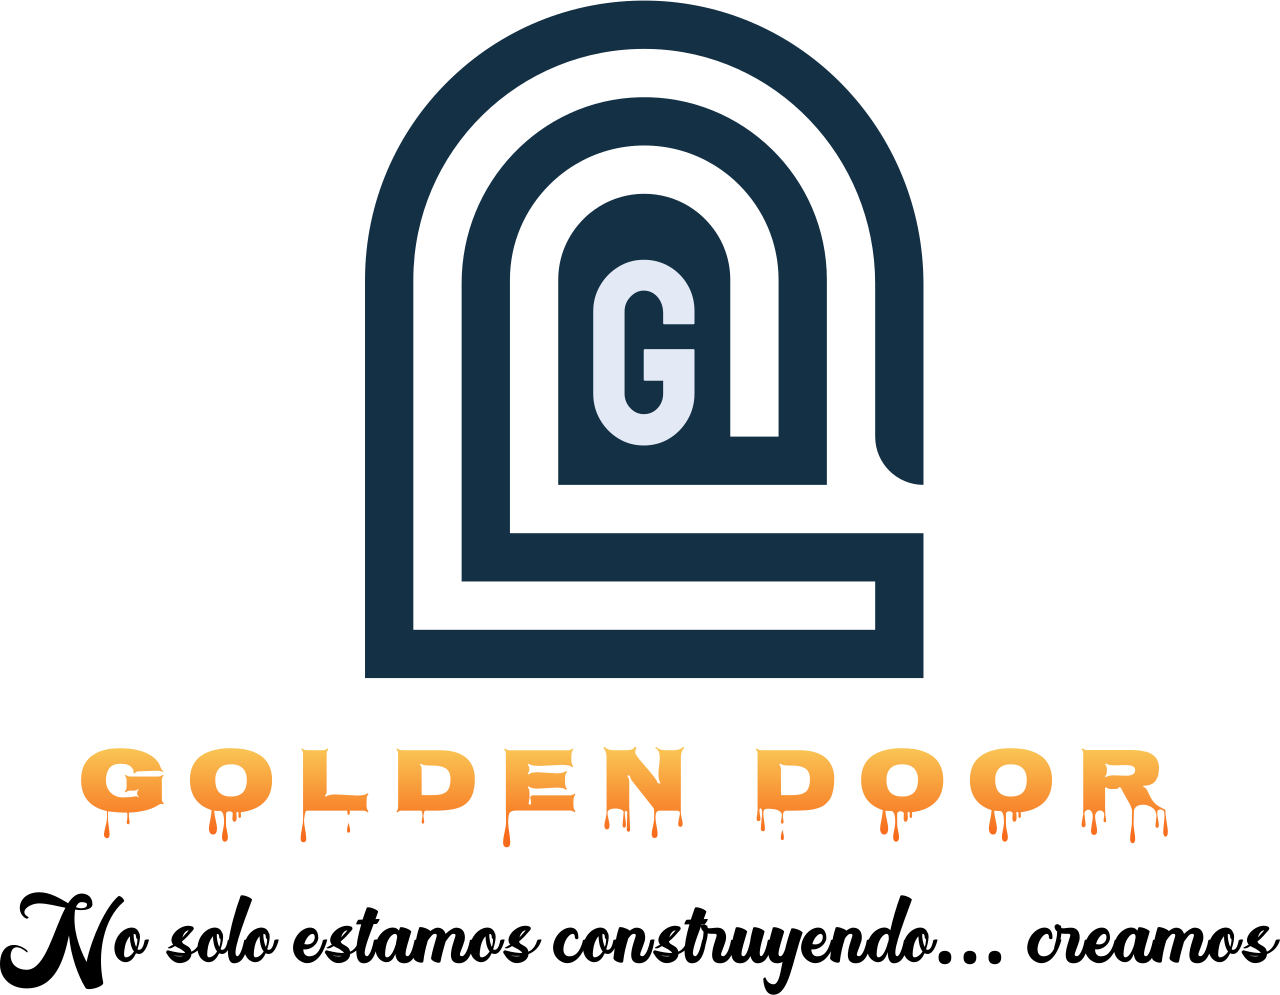 Golden Door 's logo